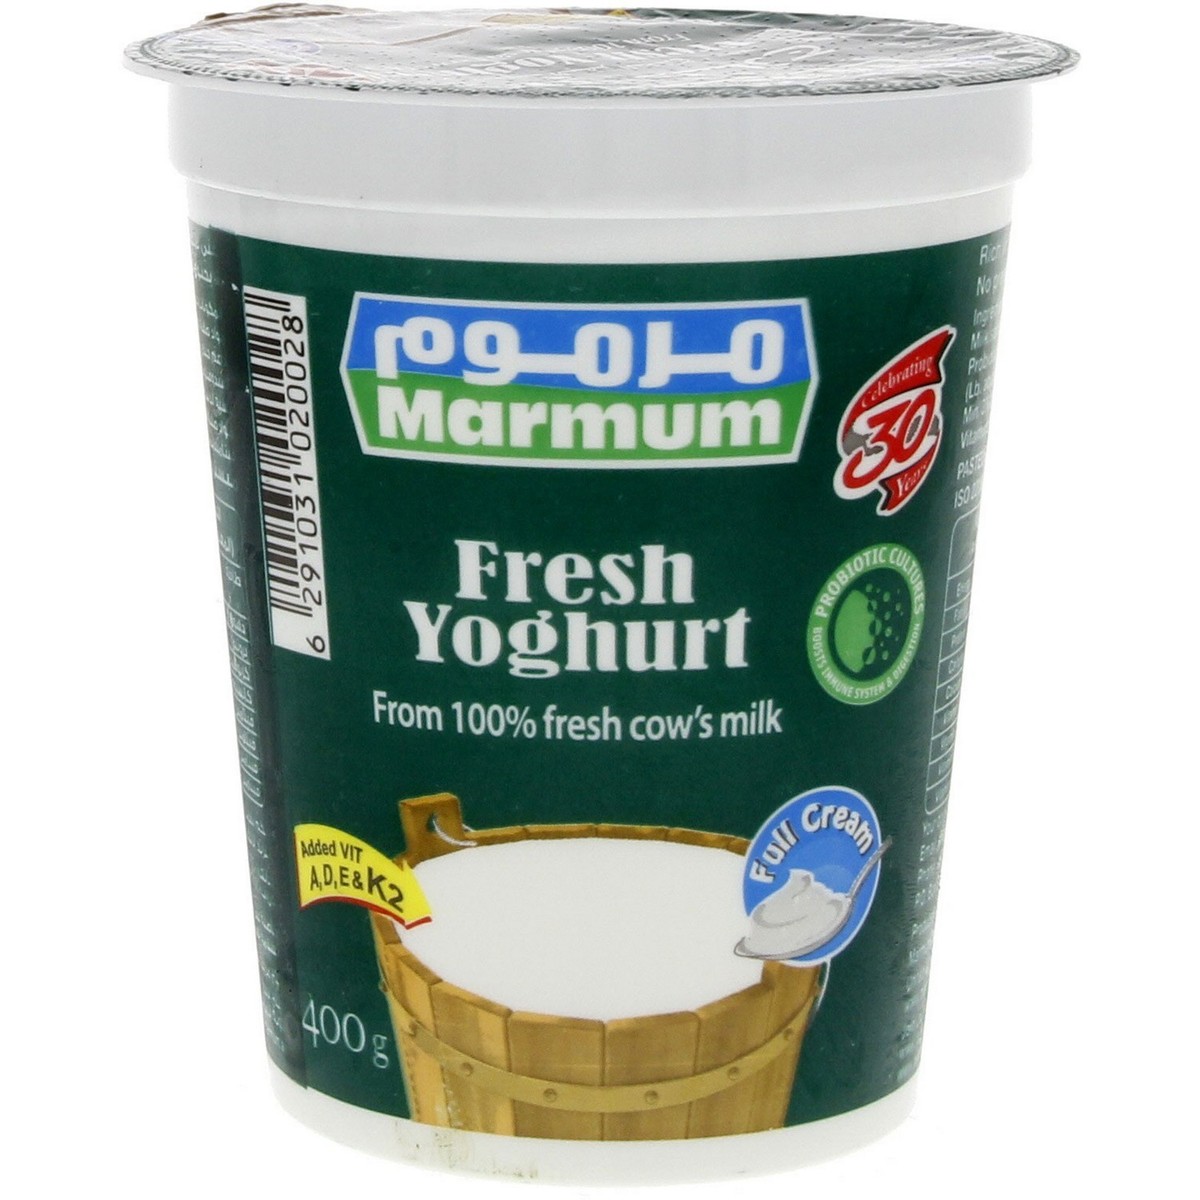 اشتري قم بشراء مرموم زبادي طازج كامل الدسم 400جم Online at Best Price من الموقع - من لولو هايبر ماركت Plain Yoghurt في الامارات